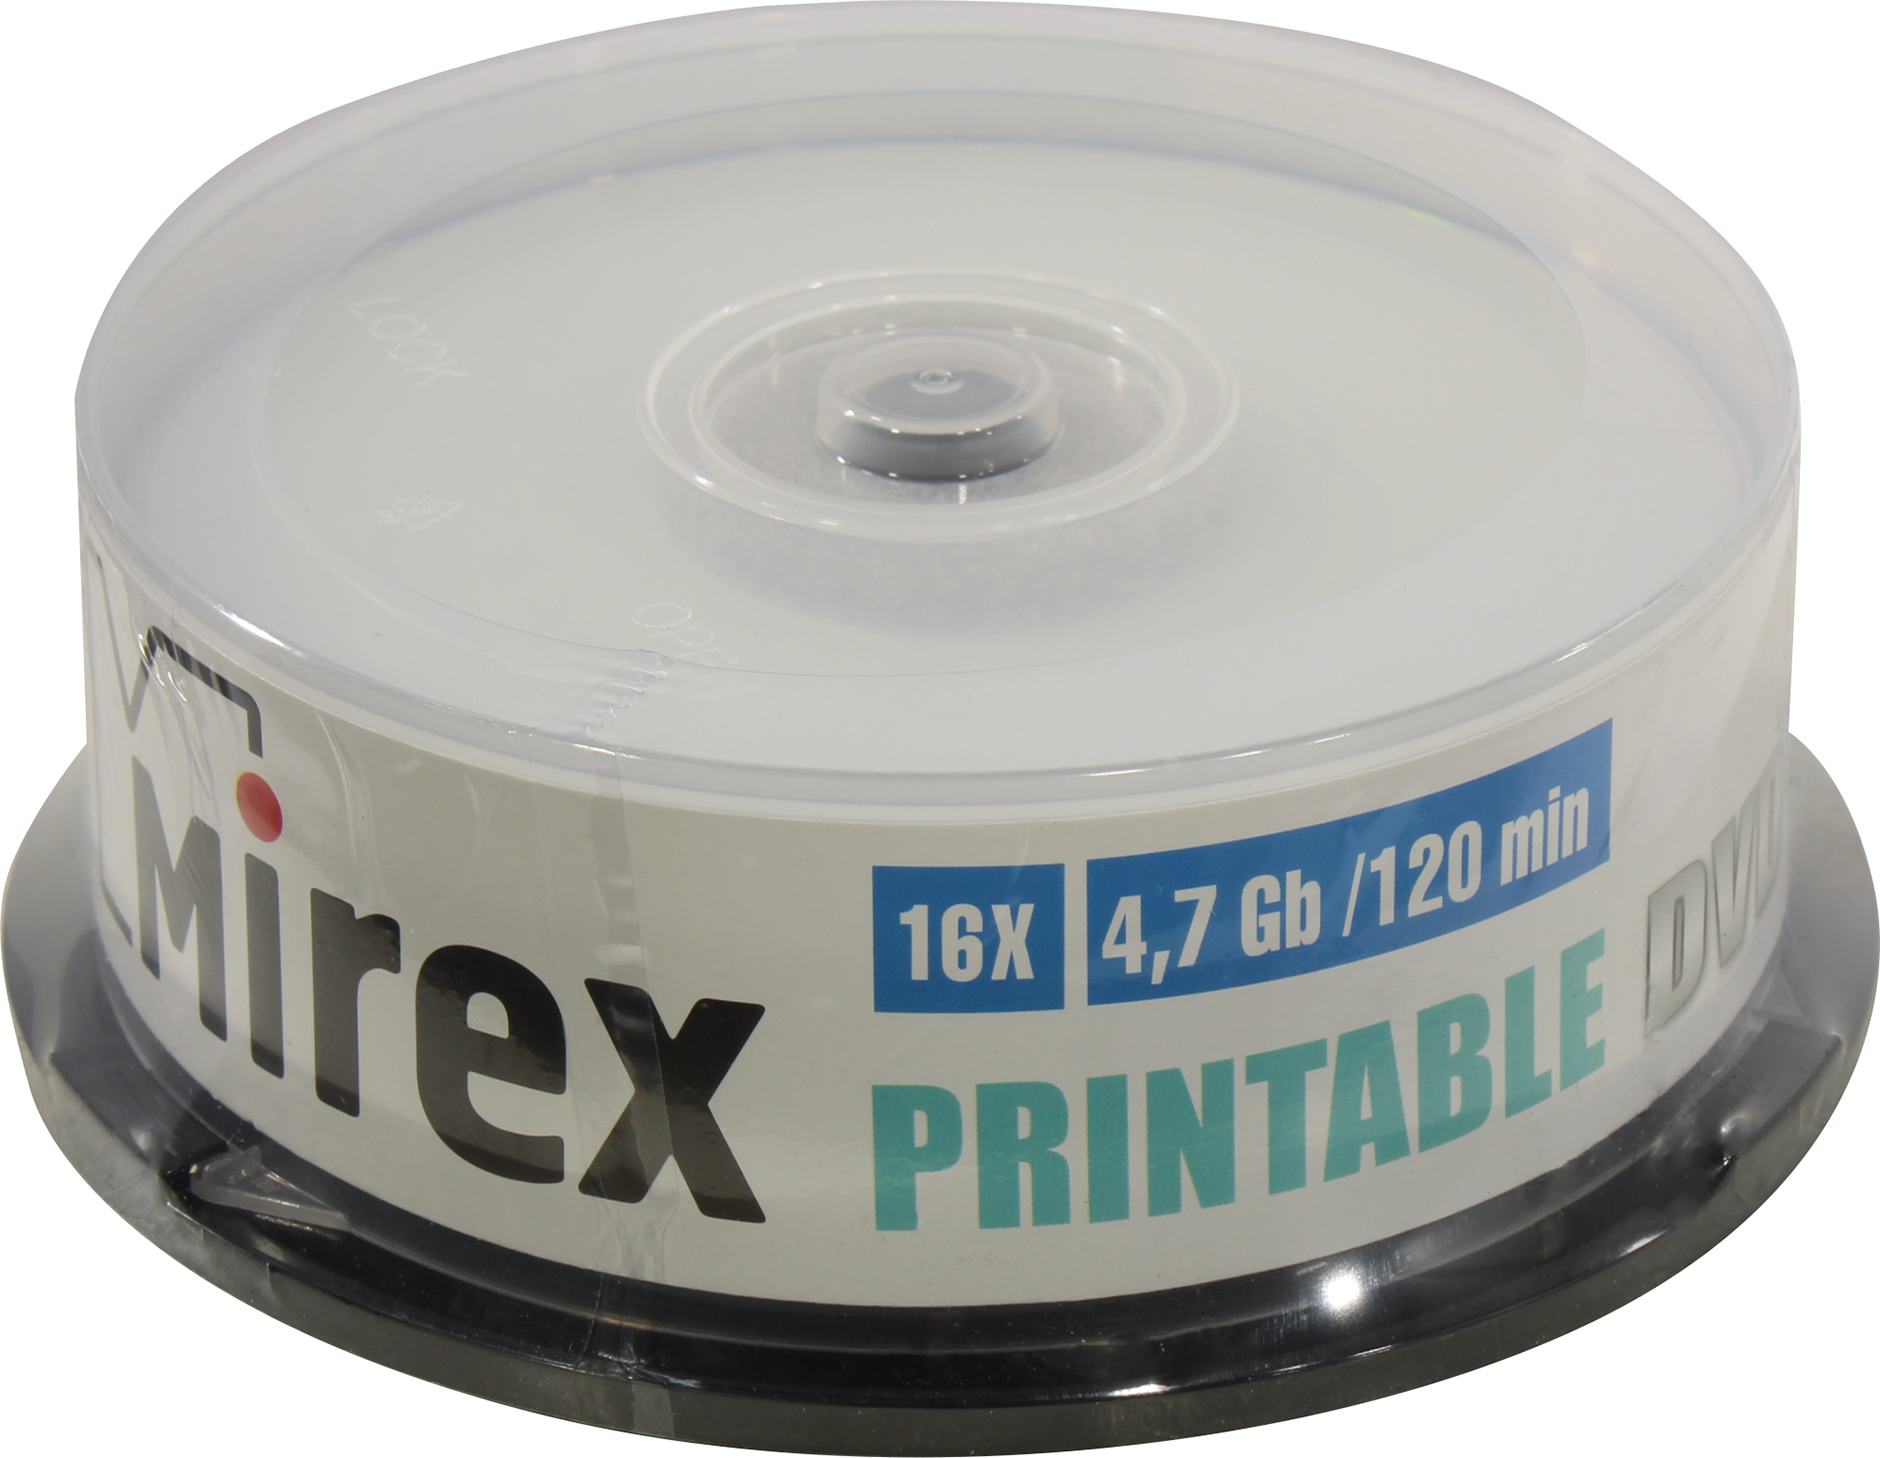 Диск Mirex DVD+R, 4.7Gb, 16x, на шпинделе, 25 шт, Printable (203421)